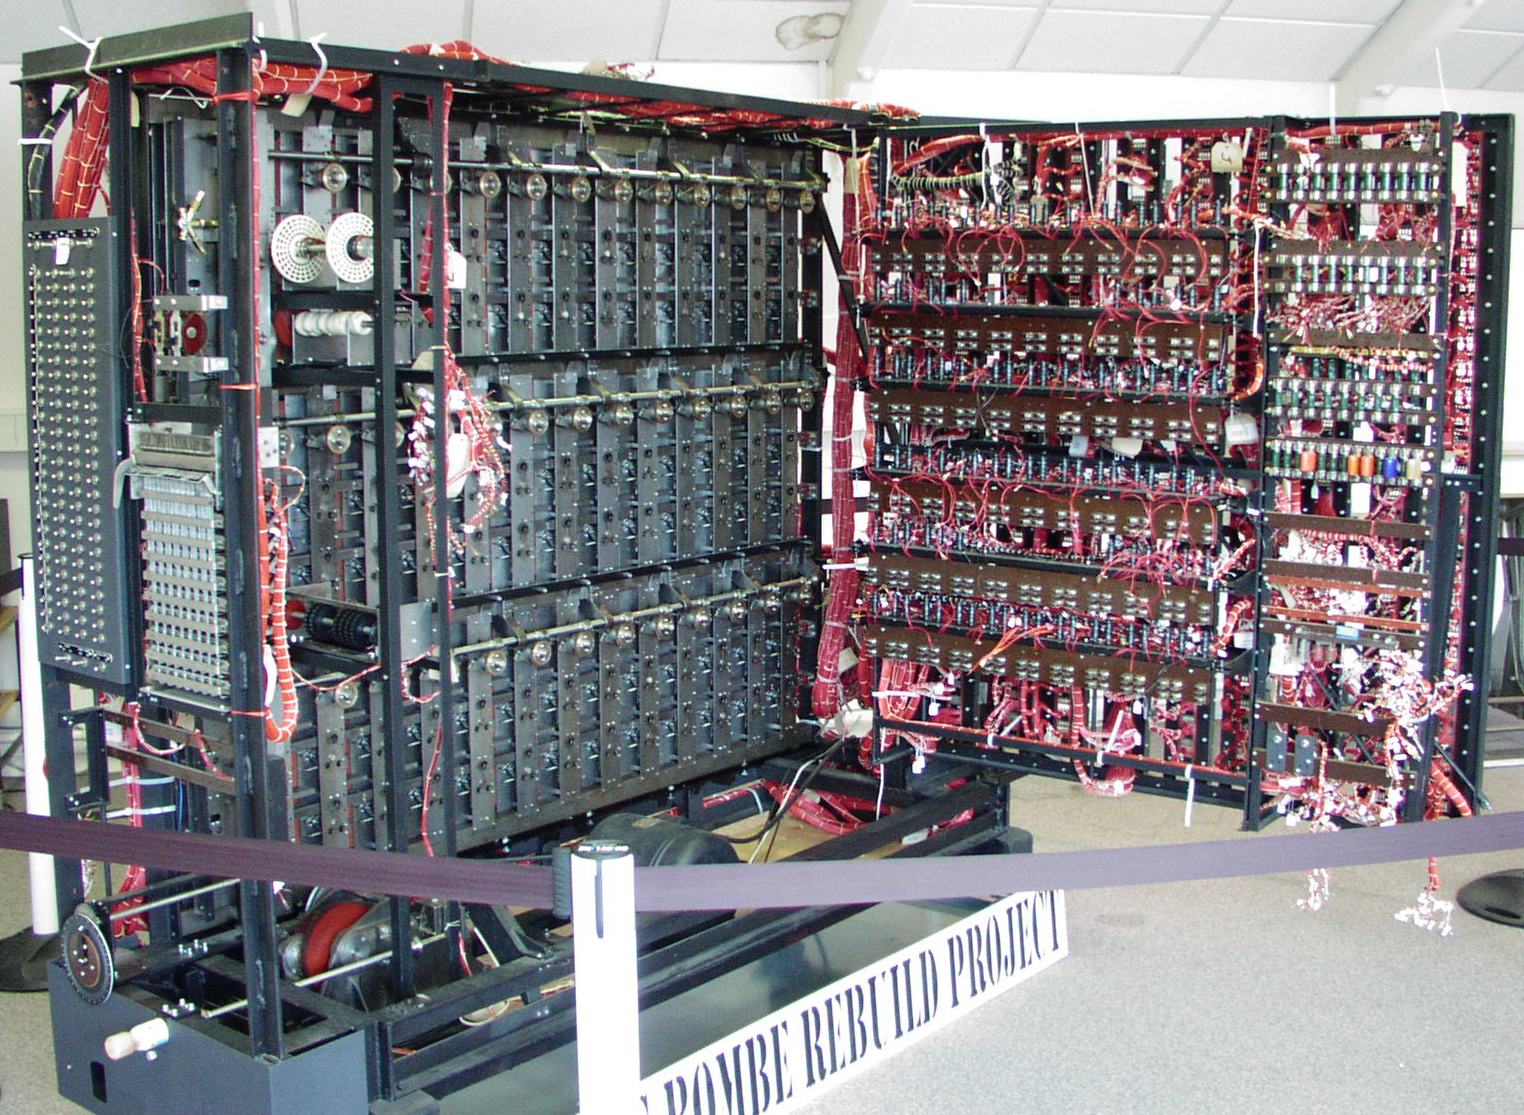  Reconstruction de l'ordinateur de rupture de code d'Alan Turing, Bombe